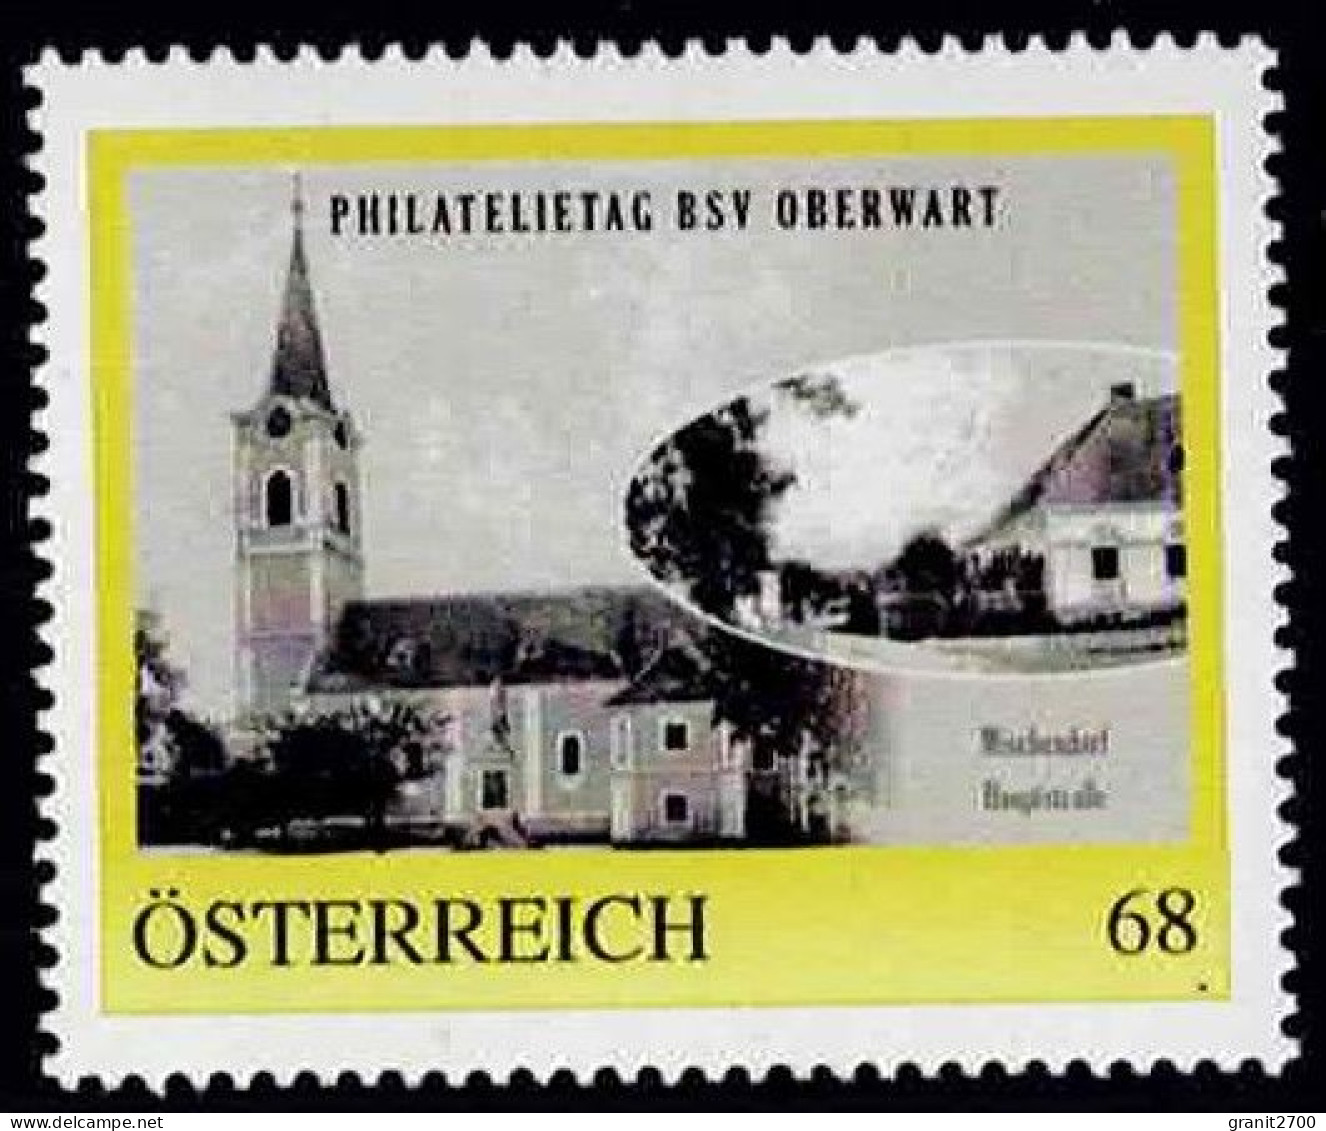 PM  Philatelietag  Oberwart - Mischendorf   Ex Bogen Nr. 8122728 Vom 18.6.2017  Postfrisch - Personnalized Stamps